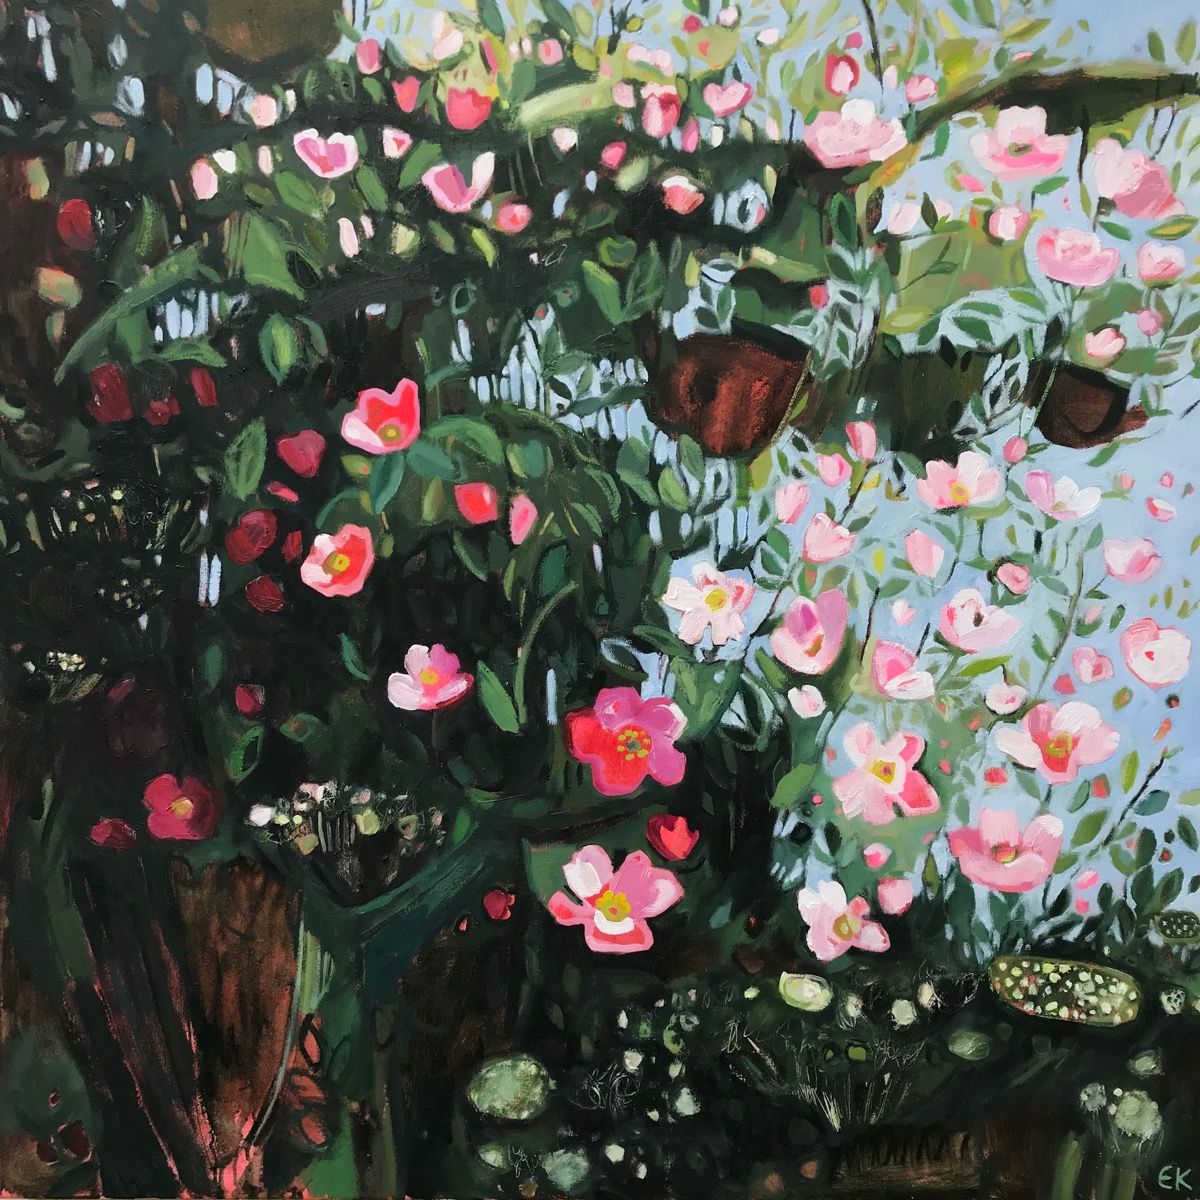 Catching the Sunshine, Hedgerow with Dog Roses by Elaine Kazimierczuk